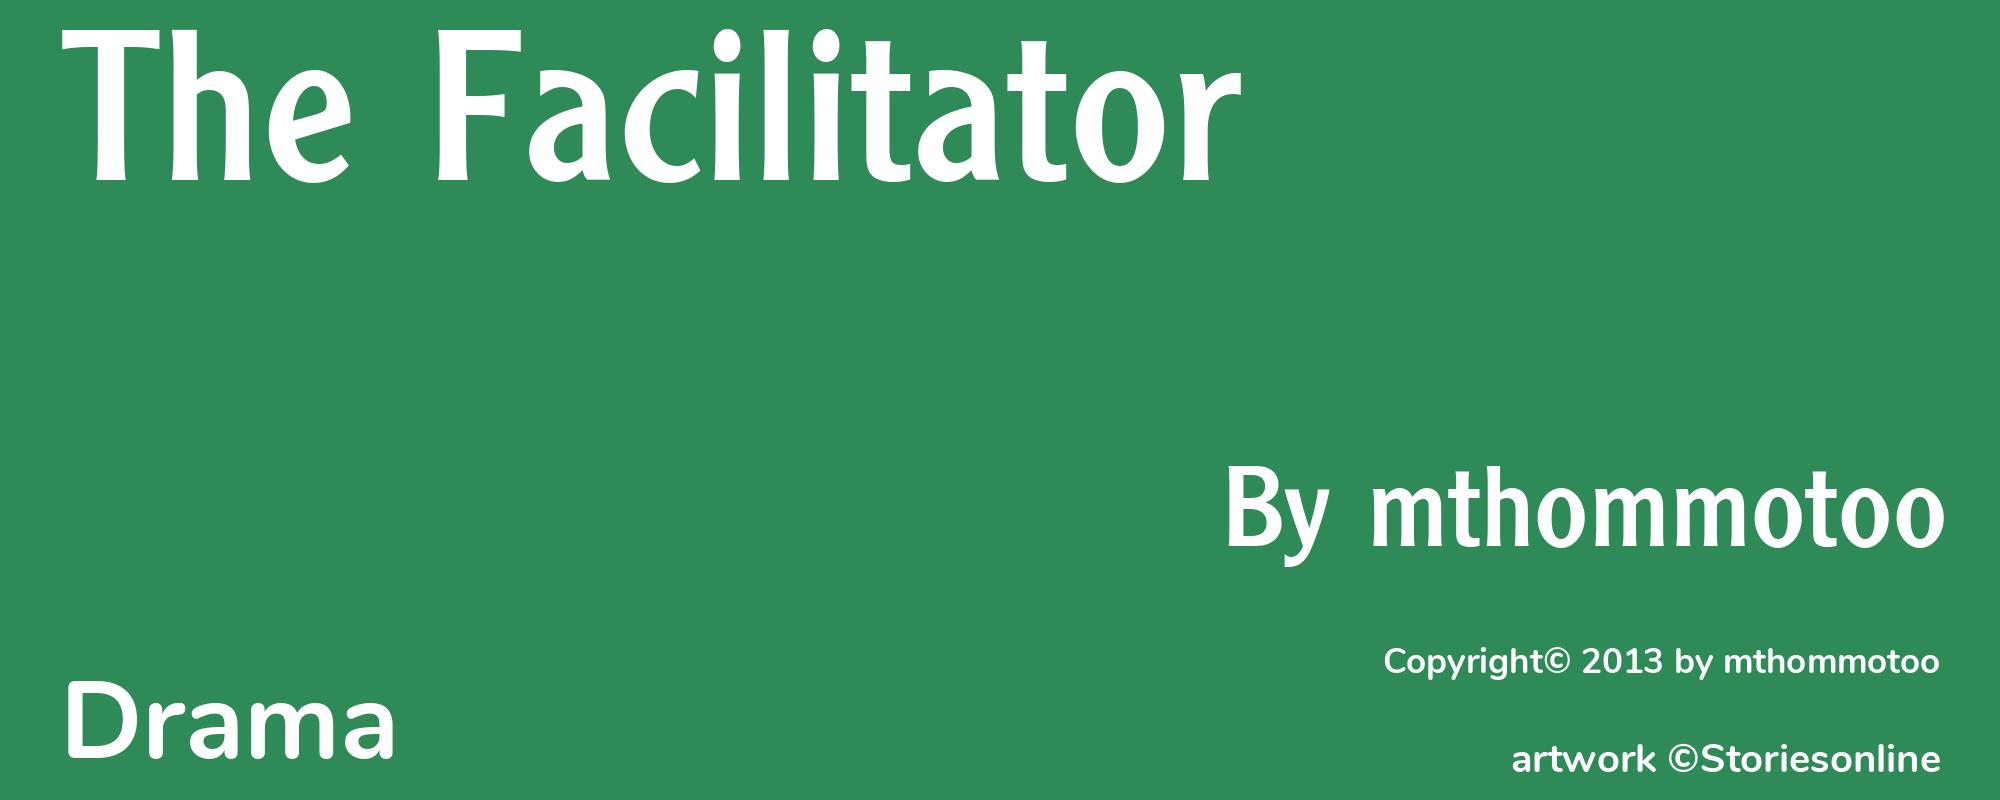 The Facilitator - Cover